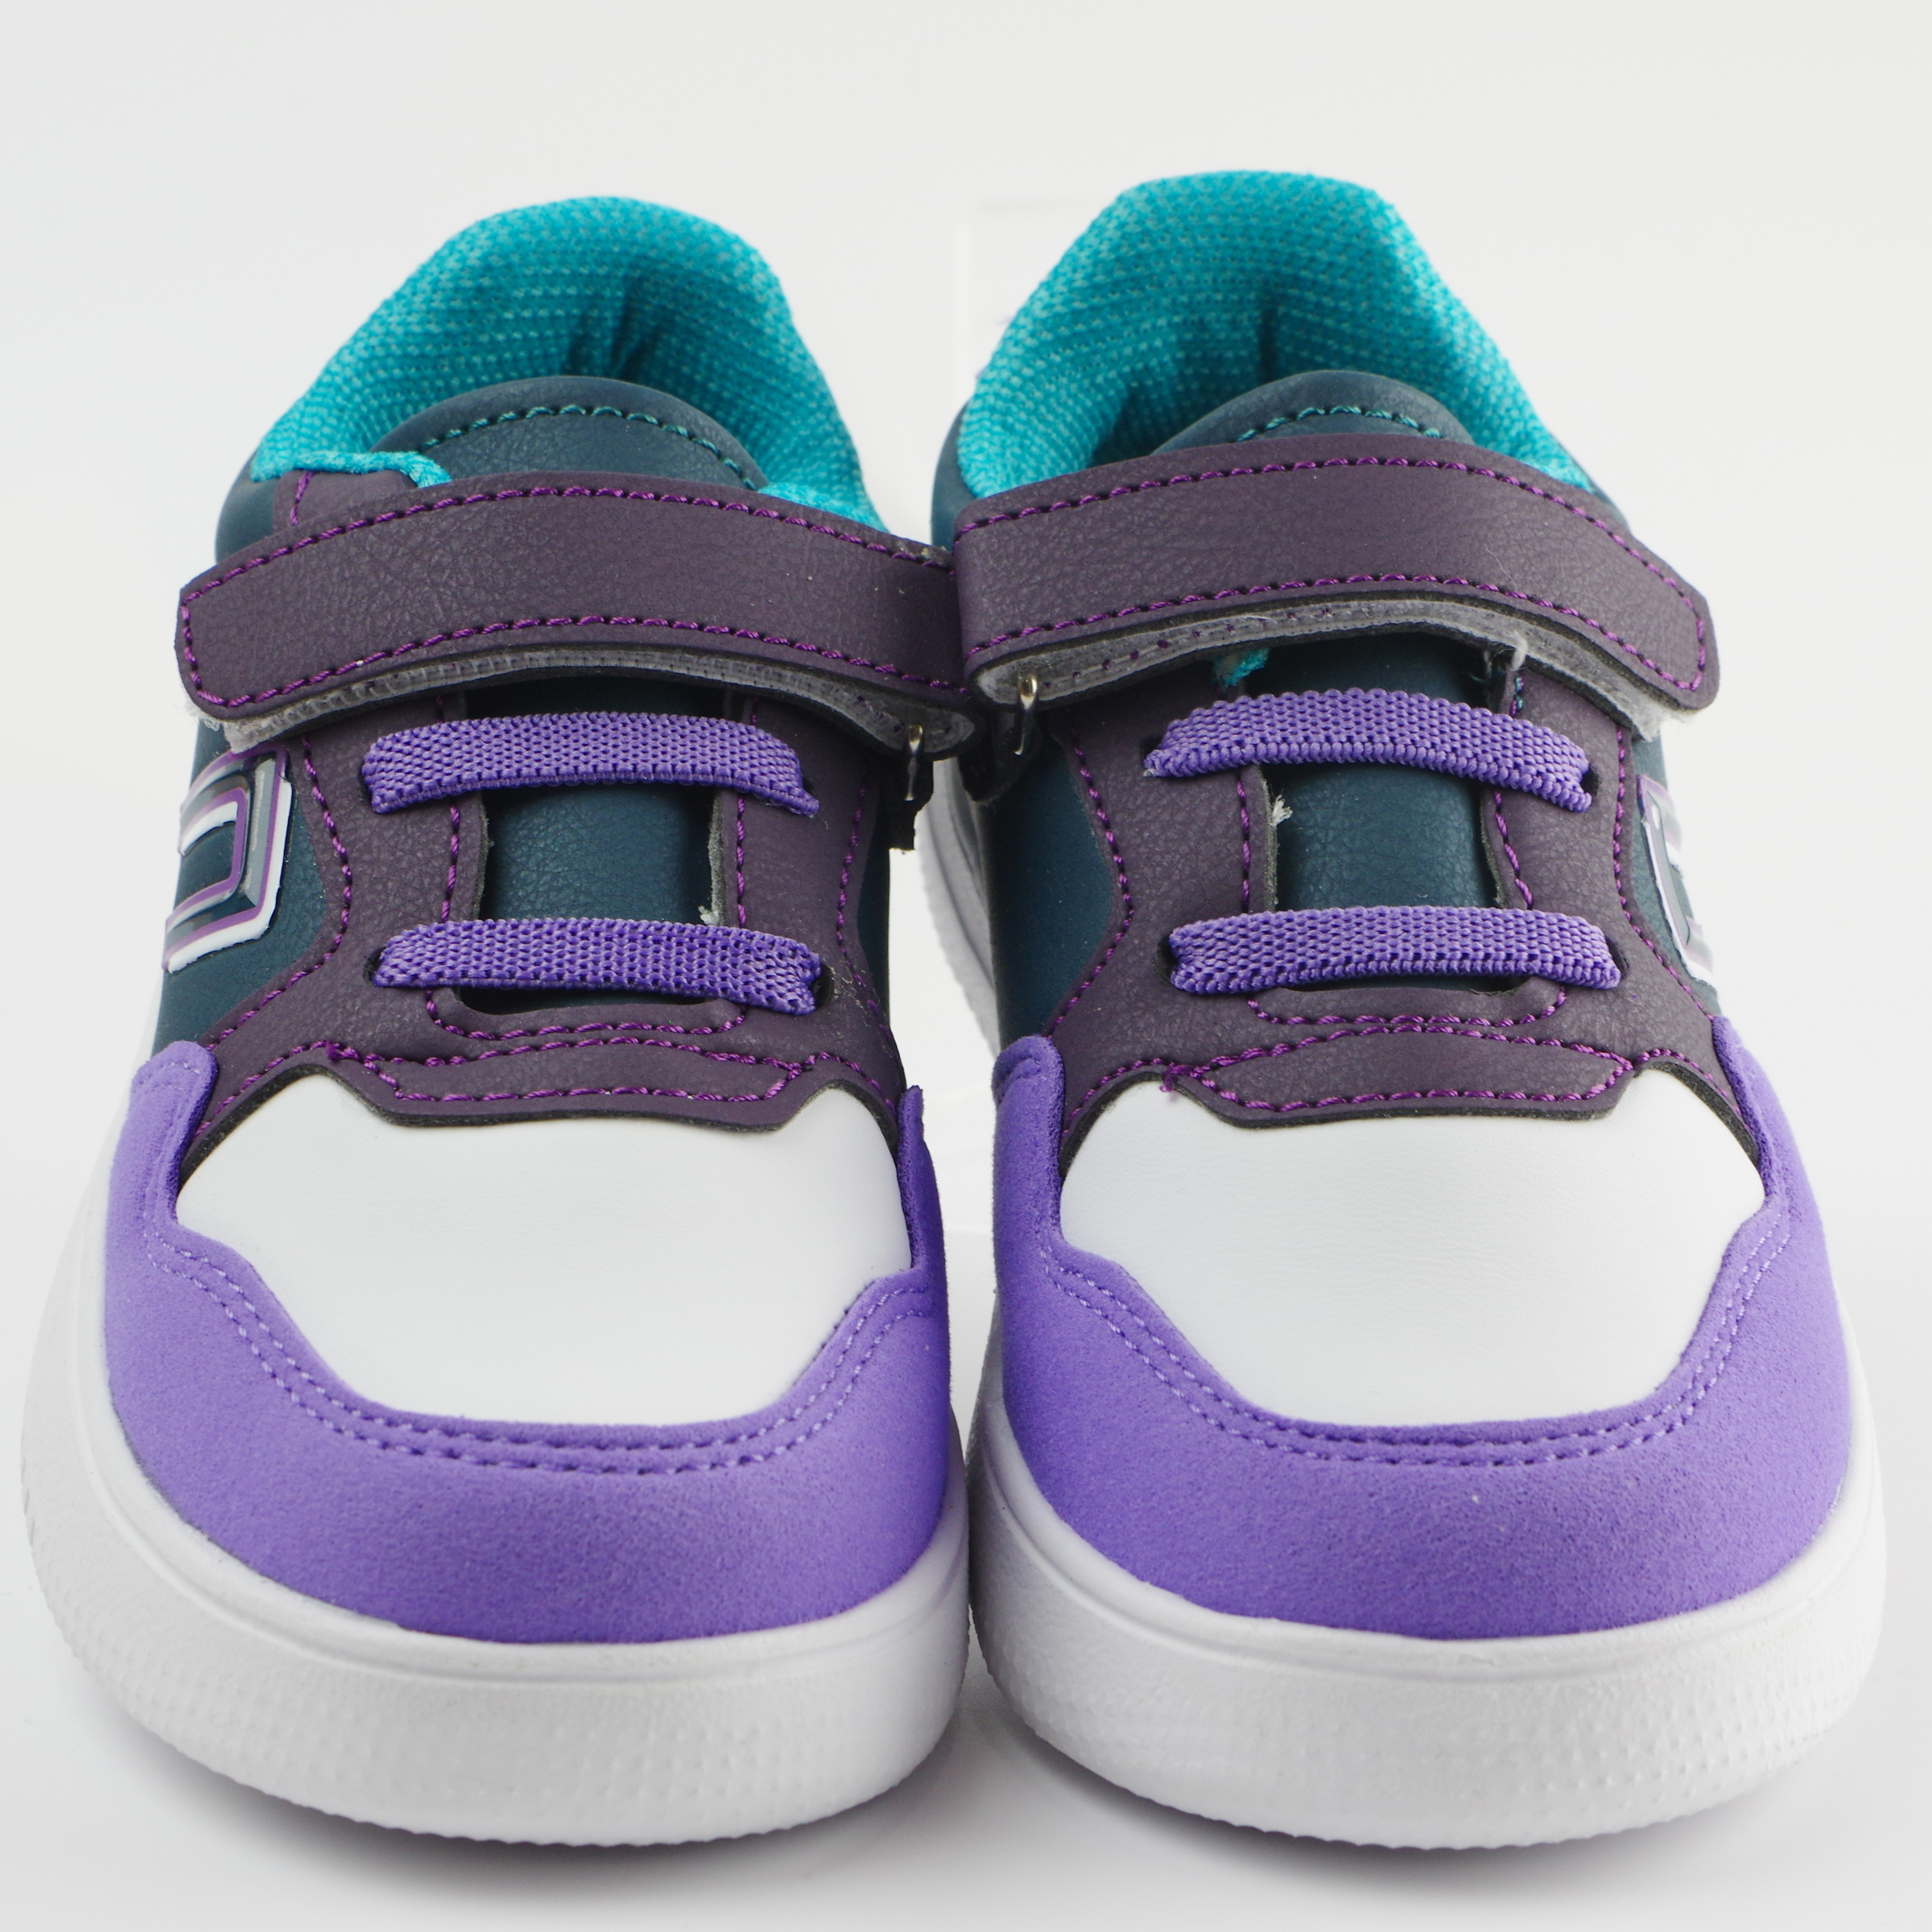 Кросівки для дівчат (2109) для дівчинки, матеріал Штучна шкіра, Фіолетовий колір, 26-30 розміри – Sole Kids. Фото 3